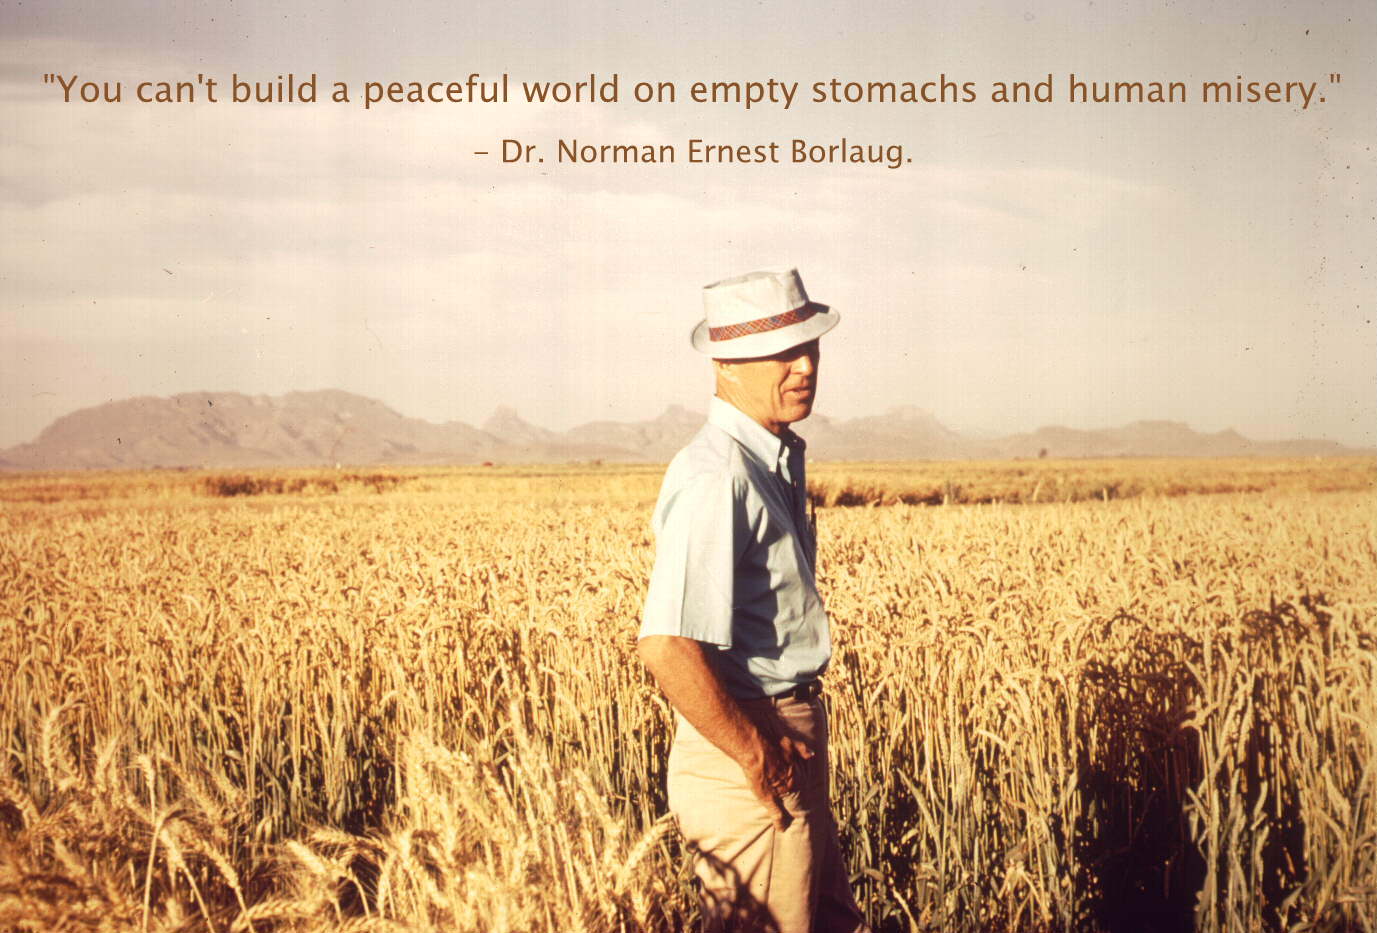 Norman Borlaug's quote